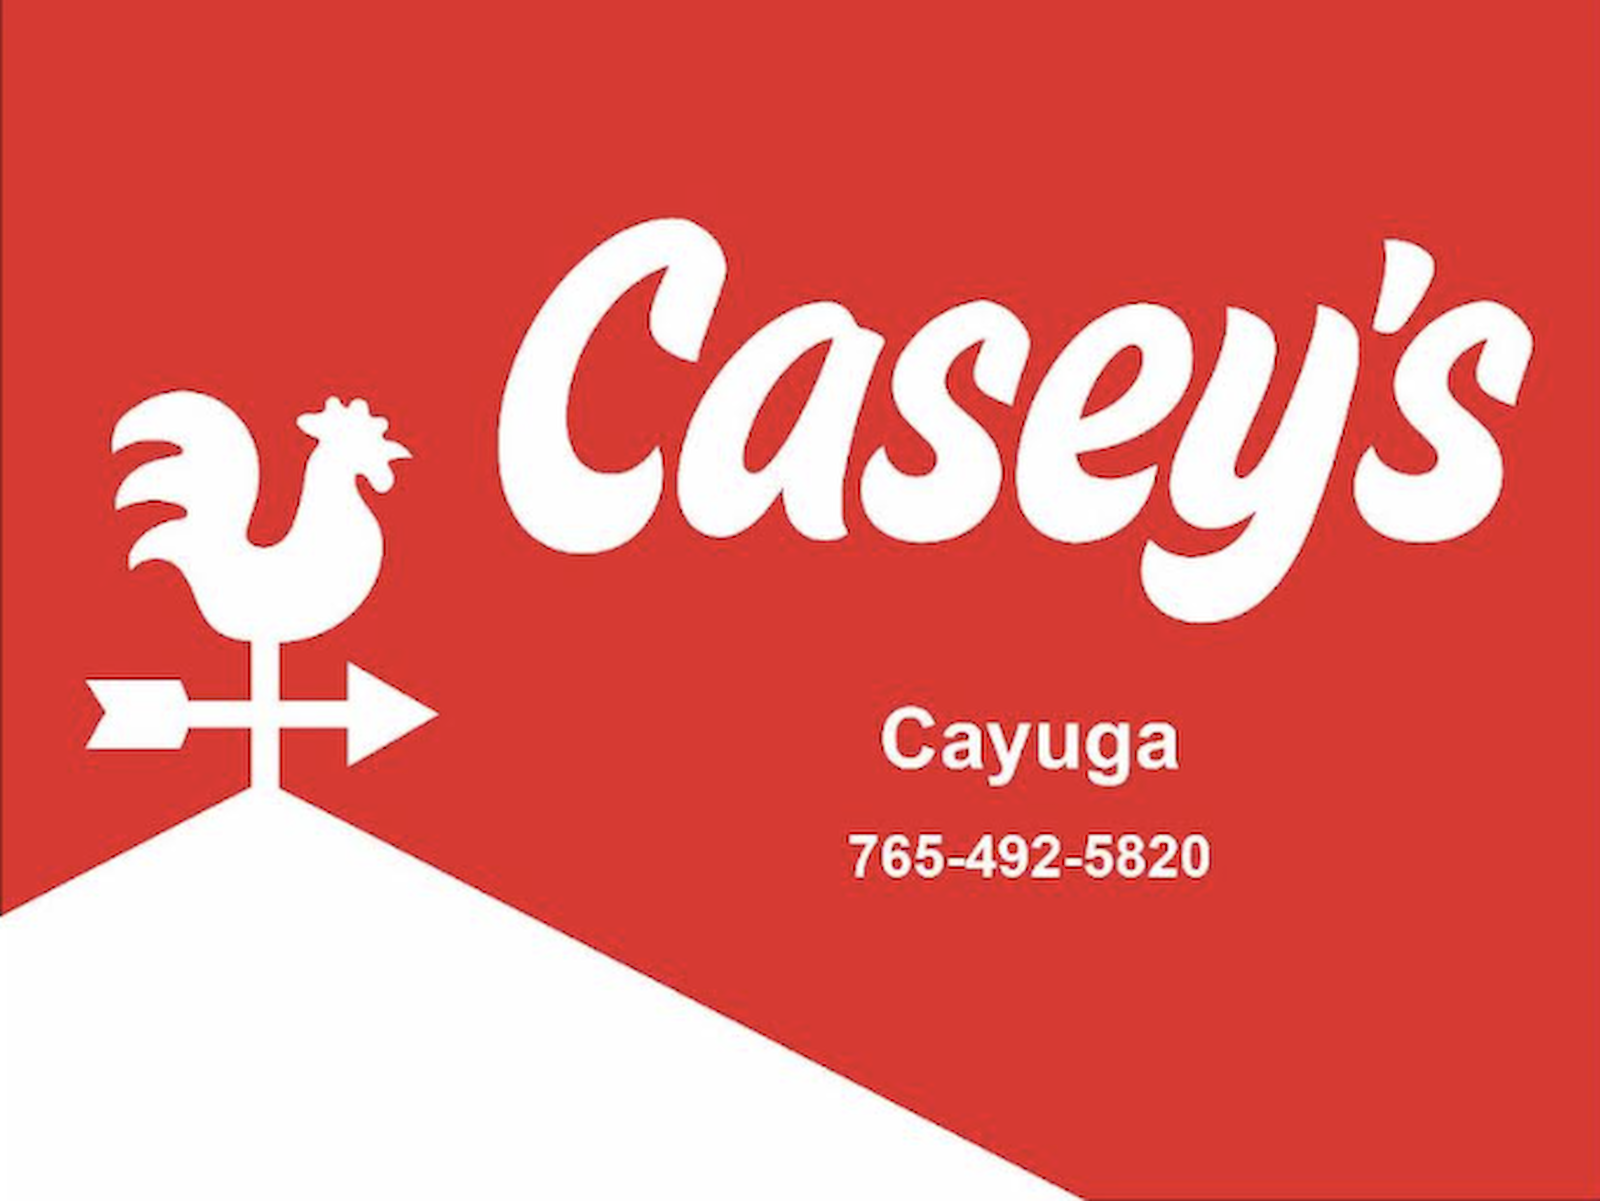 Casey's - Cayuga, IN